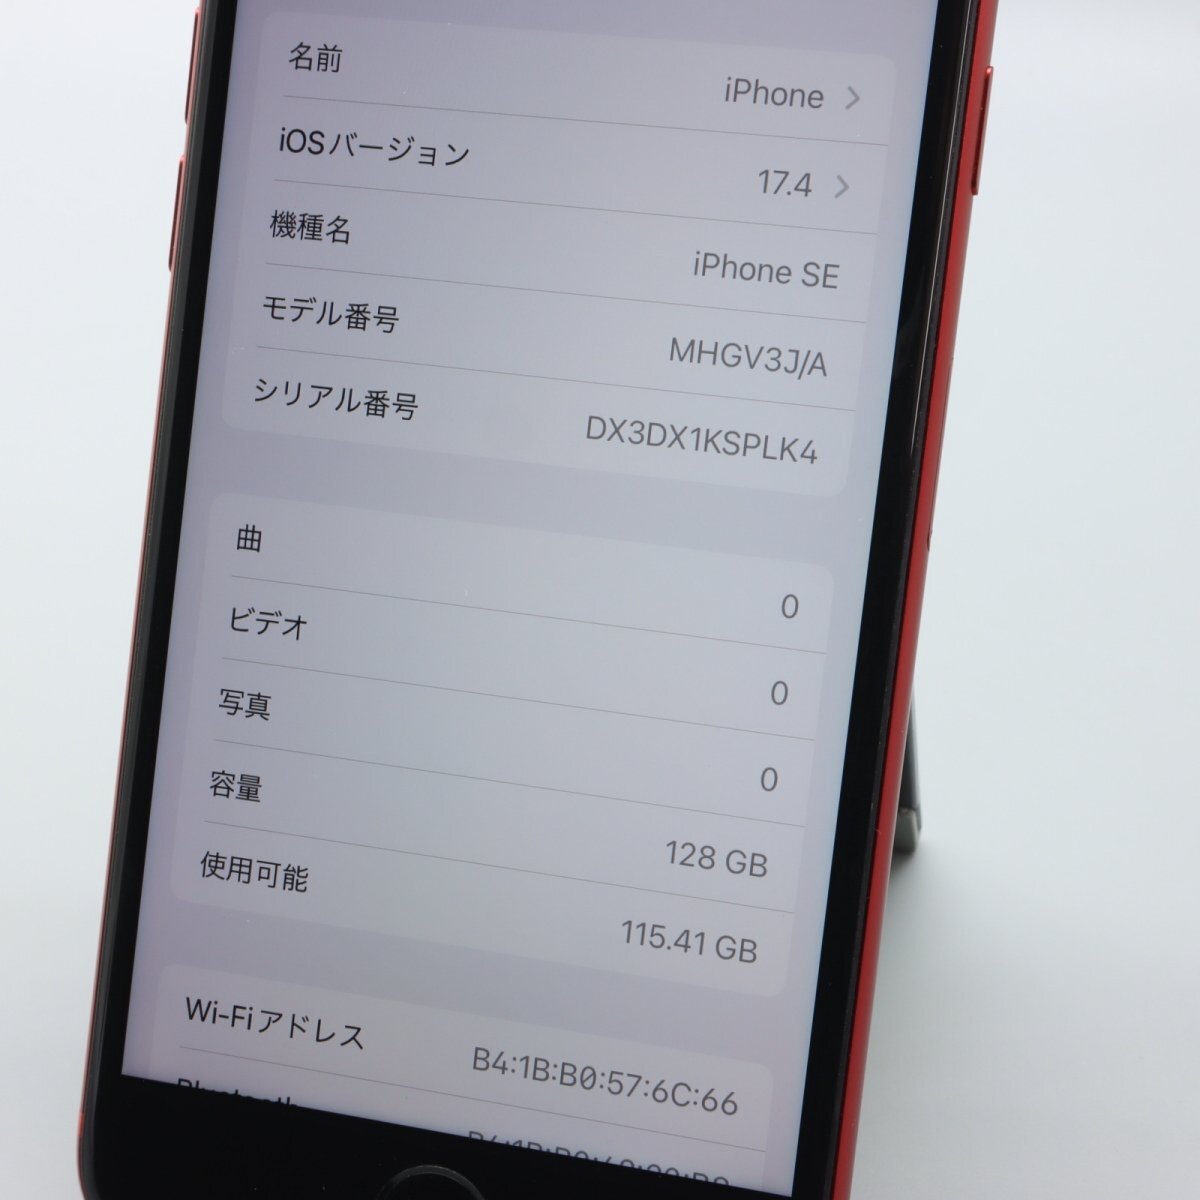 Apple iPhoneSE 128GB (第2世代) (PRODUCT)RED バッテリ80% ■ドコモ★Joshin2592【1円開始・送料無料】の画像3